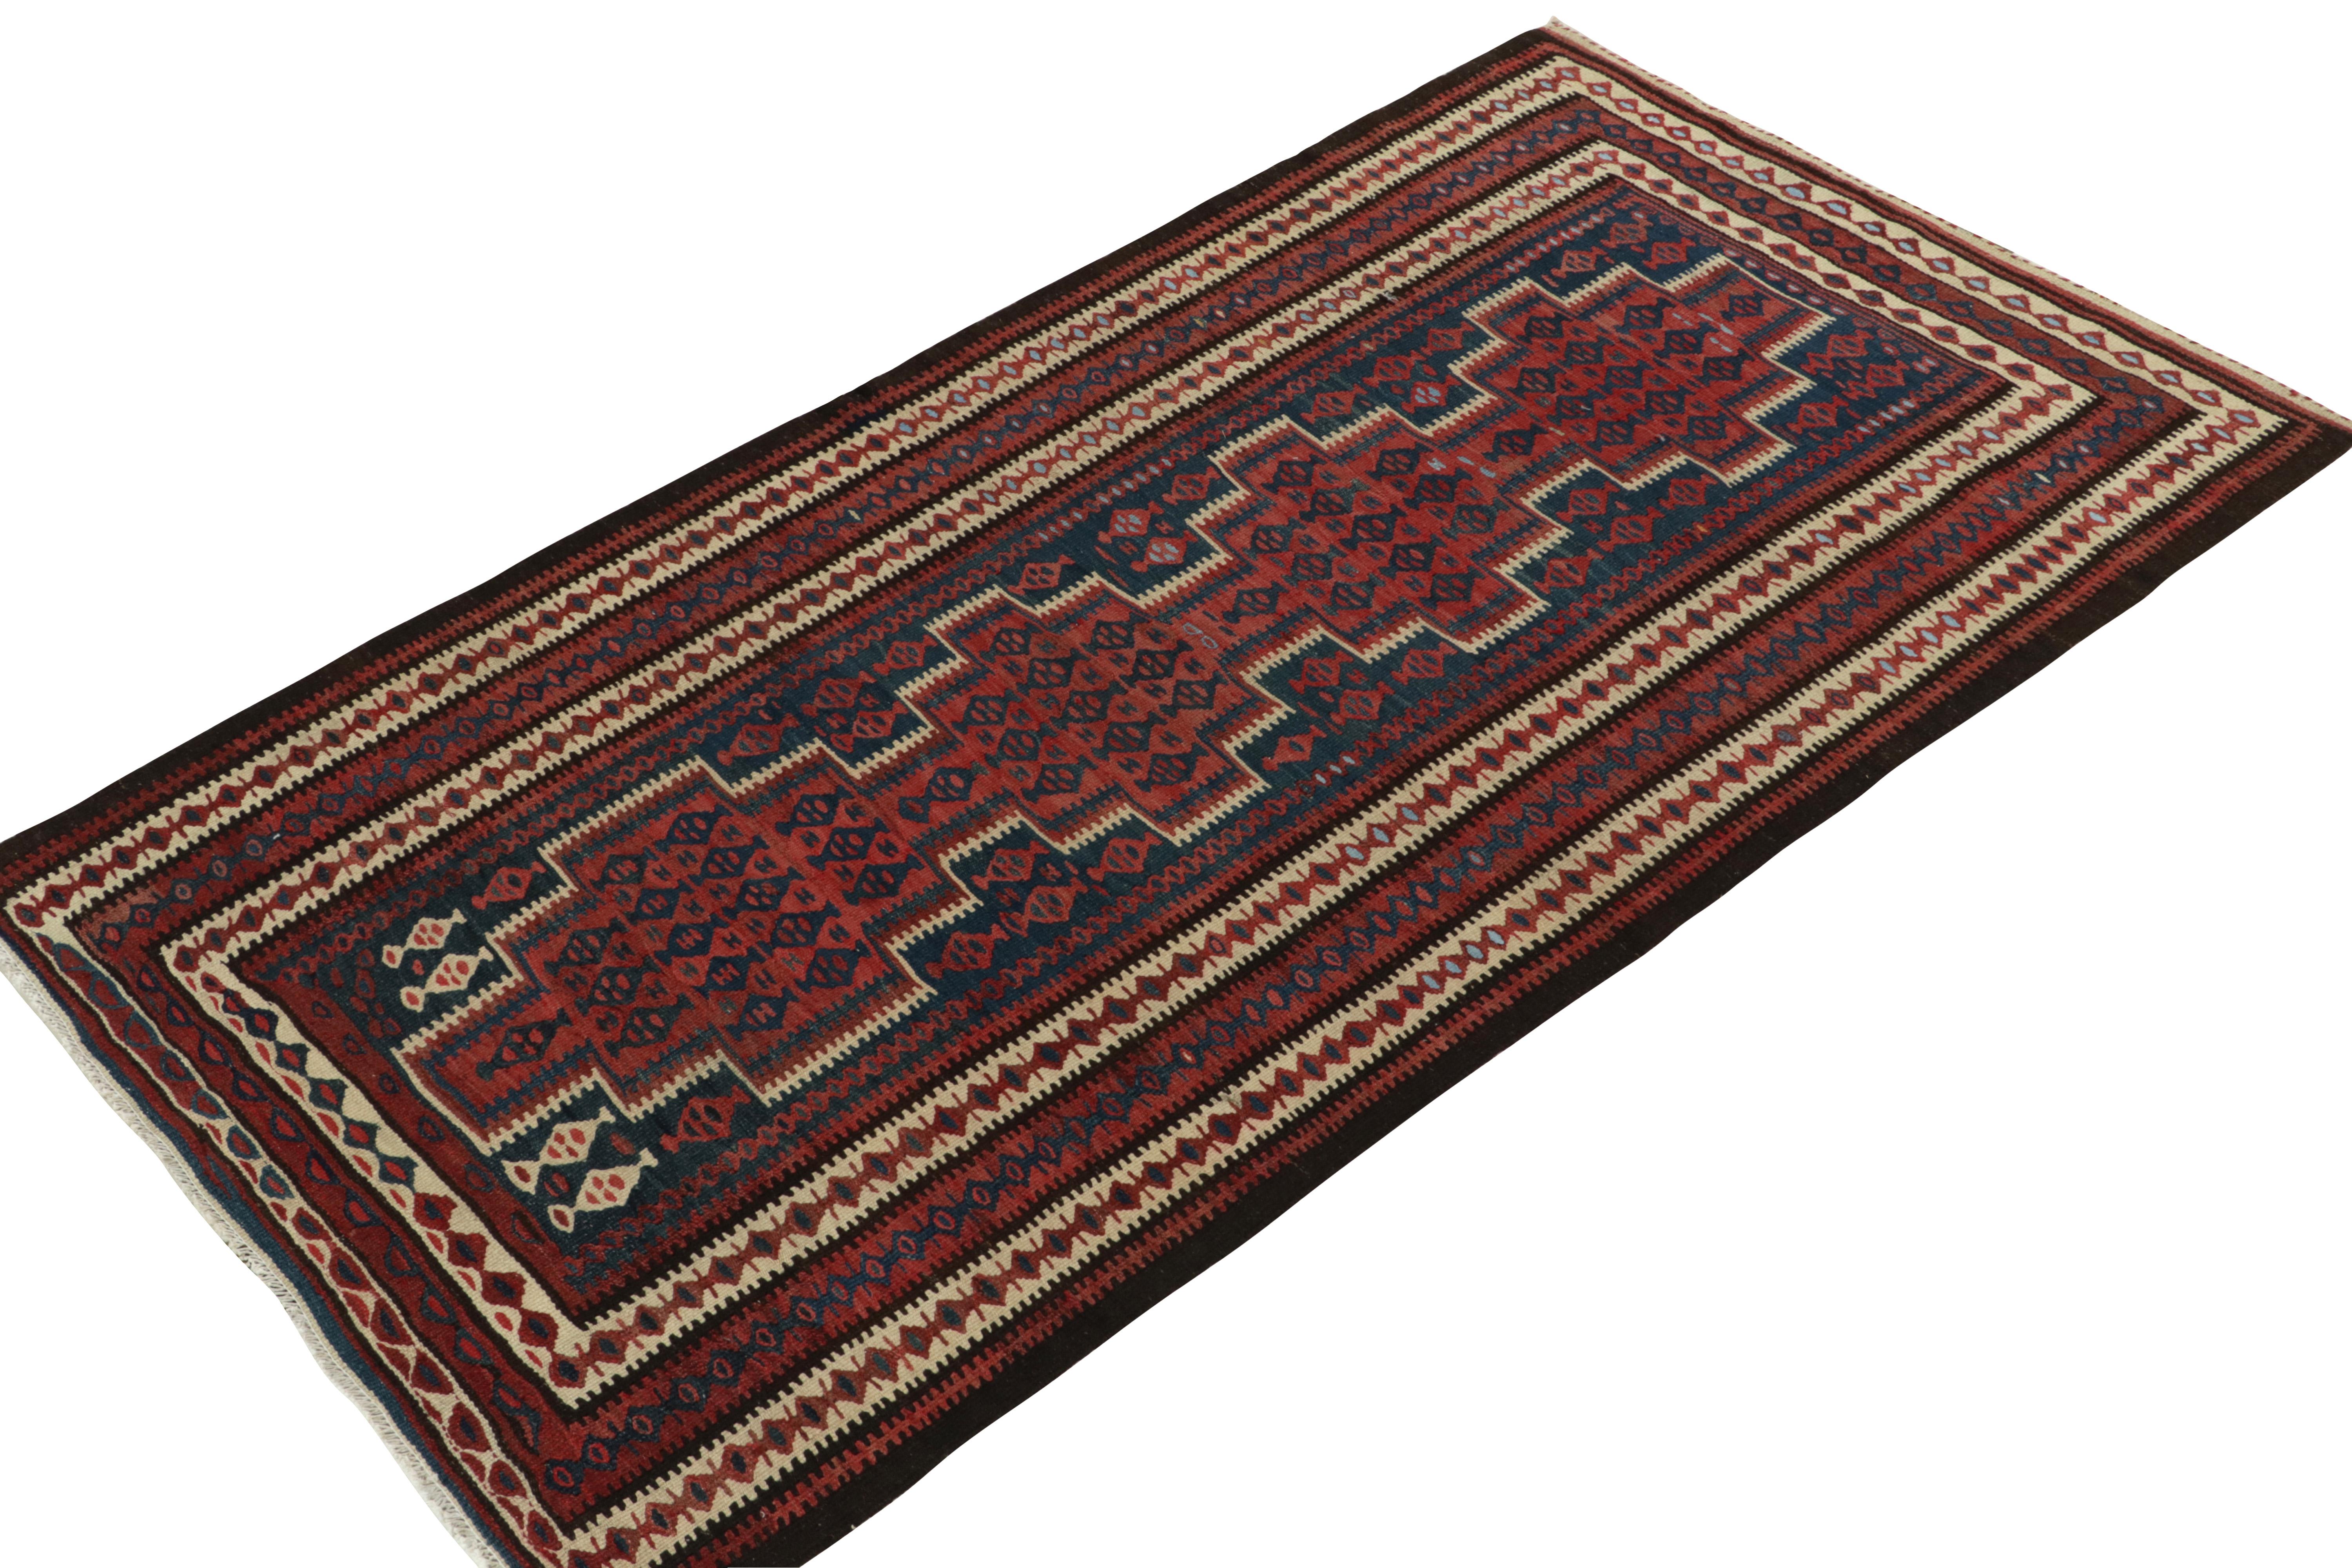 Der aus der Türkei stammende Kelimteppich aus der Mitte des Jahrhunderts (ca. 1950-1960) zeichnet sich durch ein sorgfältiges All-Over-Muster aus. Mit einem gut definierten traditionellen Muster in Rot, Blau und Beige-Braun mit hervorragender